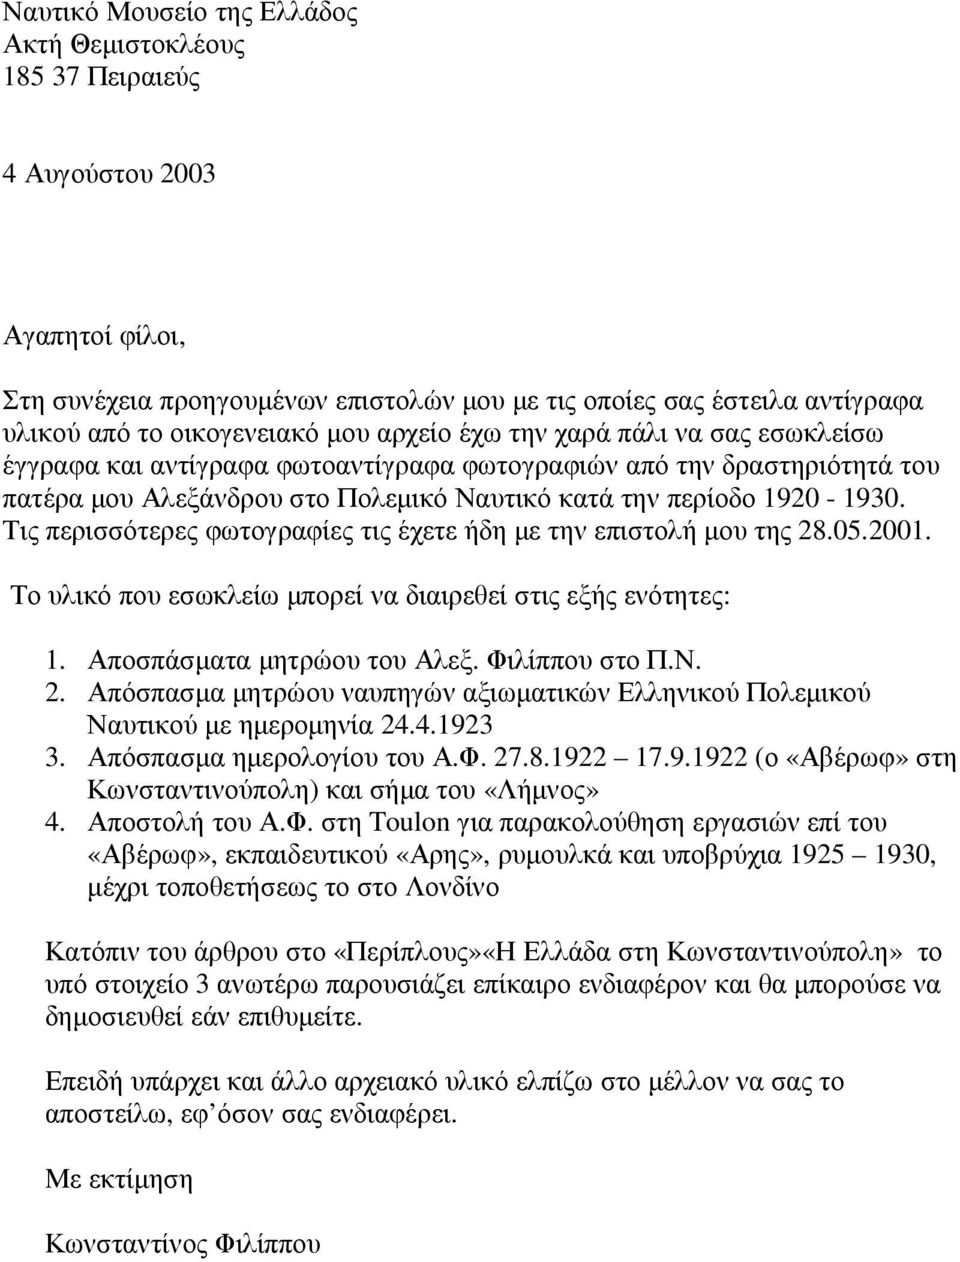 Τις περισσότερες φωτογραφίες τις έχετε ήδη µε την επιστολή µου της 28.05.2001. Το υλικό που εσωκλείω µπορεί να διαιρεθεί στις εξής ενότητες: 1. Αποσπάσµατα µητρώου του Αλεξ. Φιλίππου στο Π.Ν. 2. Απόσπασµα µητρώου ναυπηγών αξιωµατικών Ελληνικού Πολεµικού Ναυτικού µε ηµεροµηνία 24.